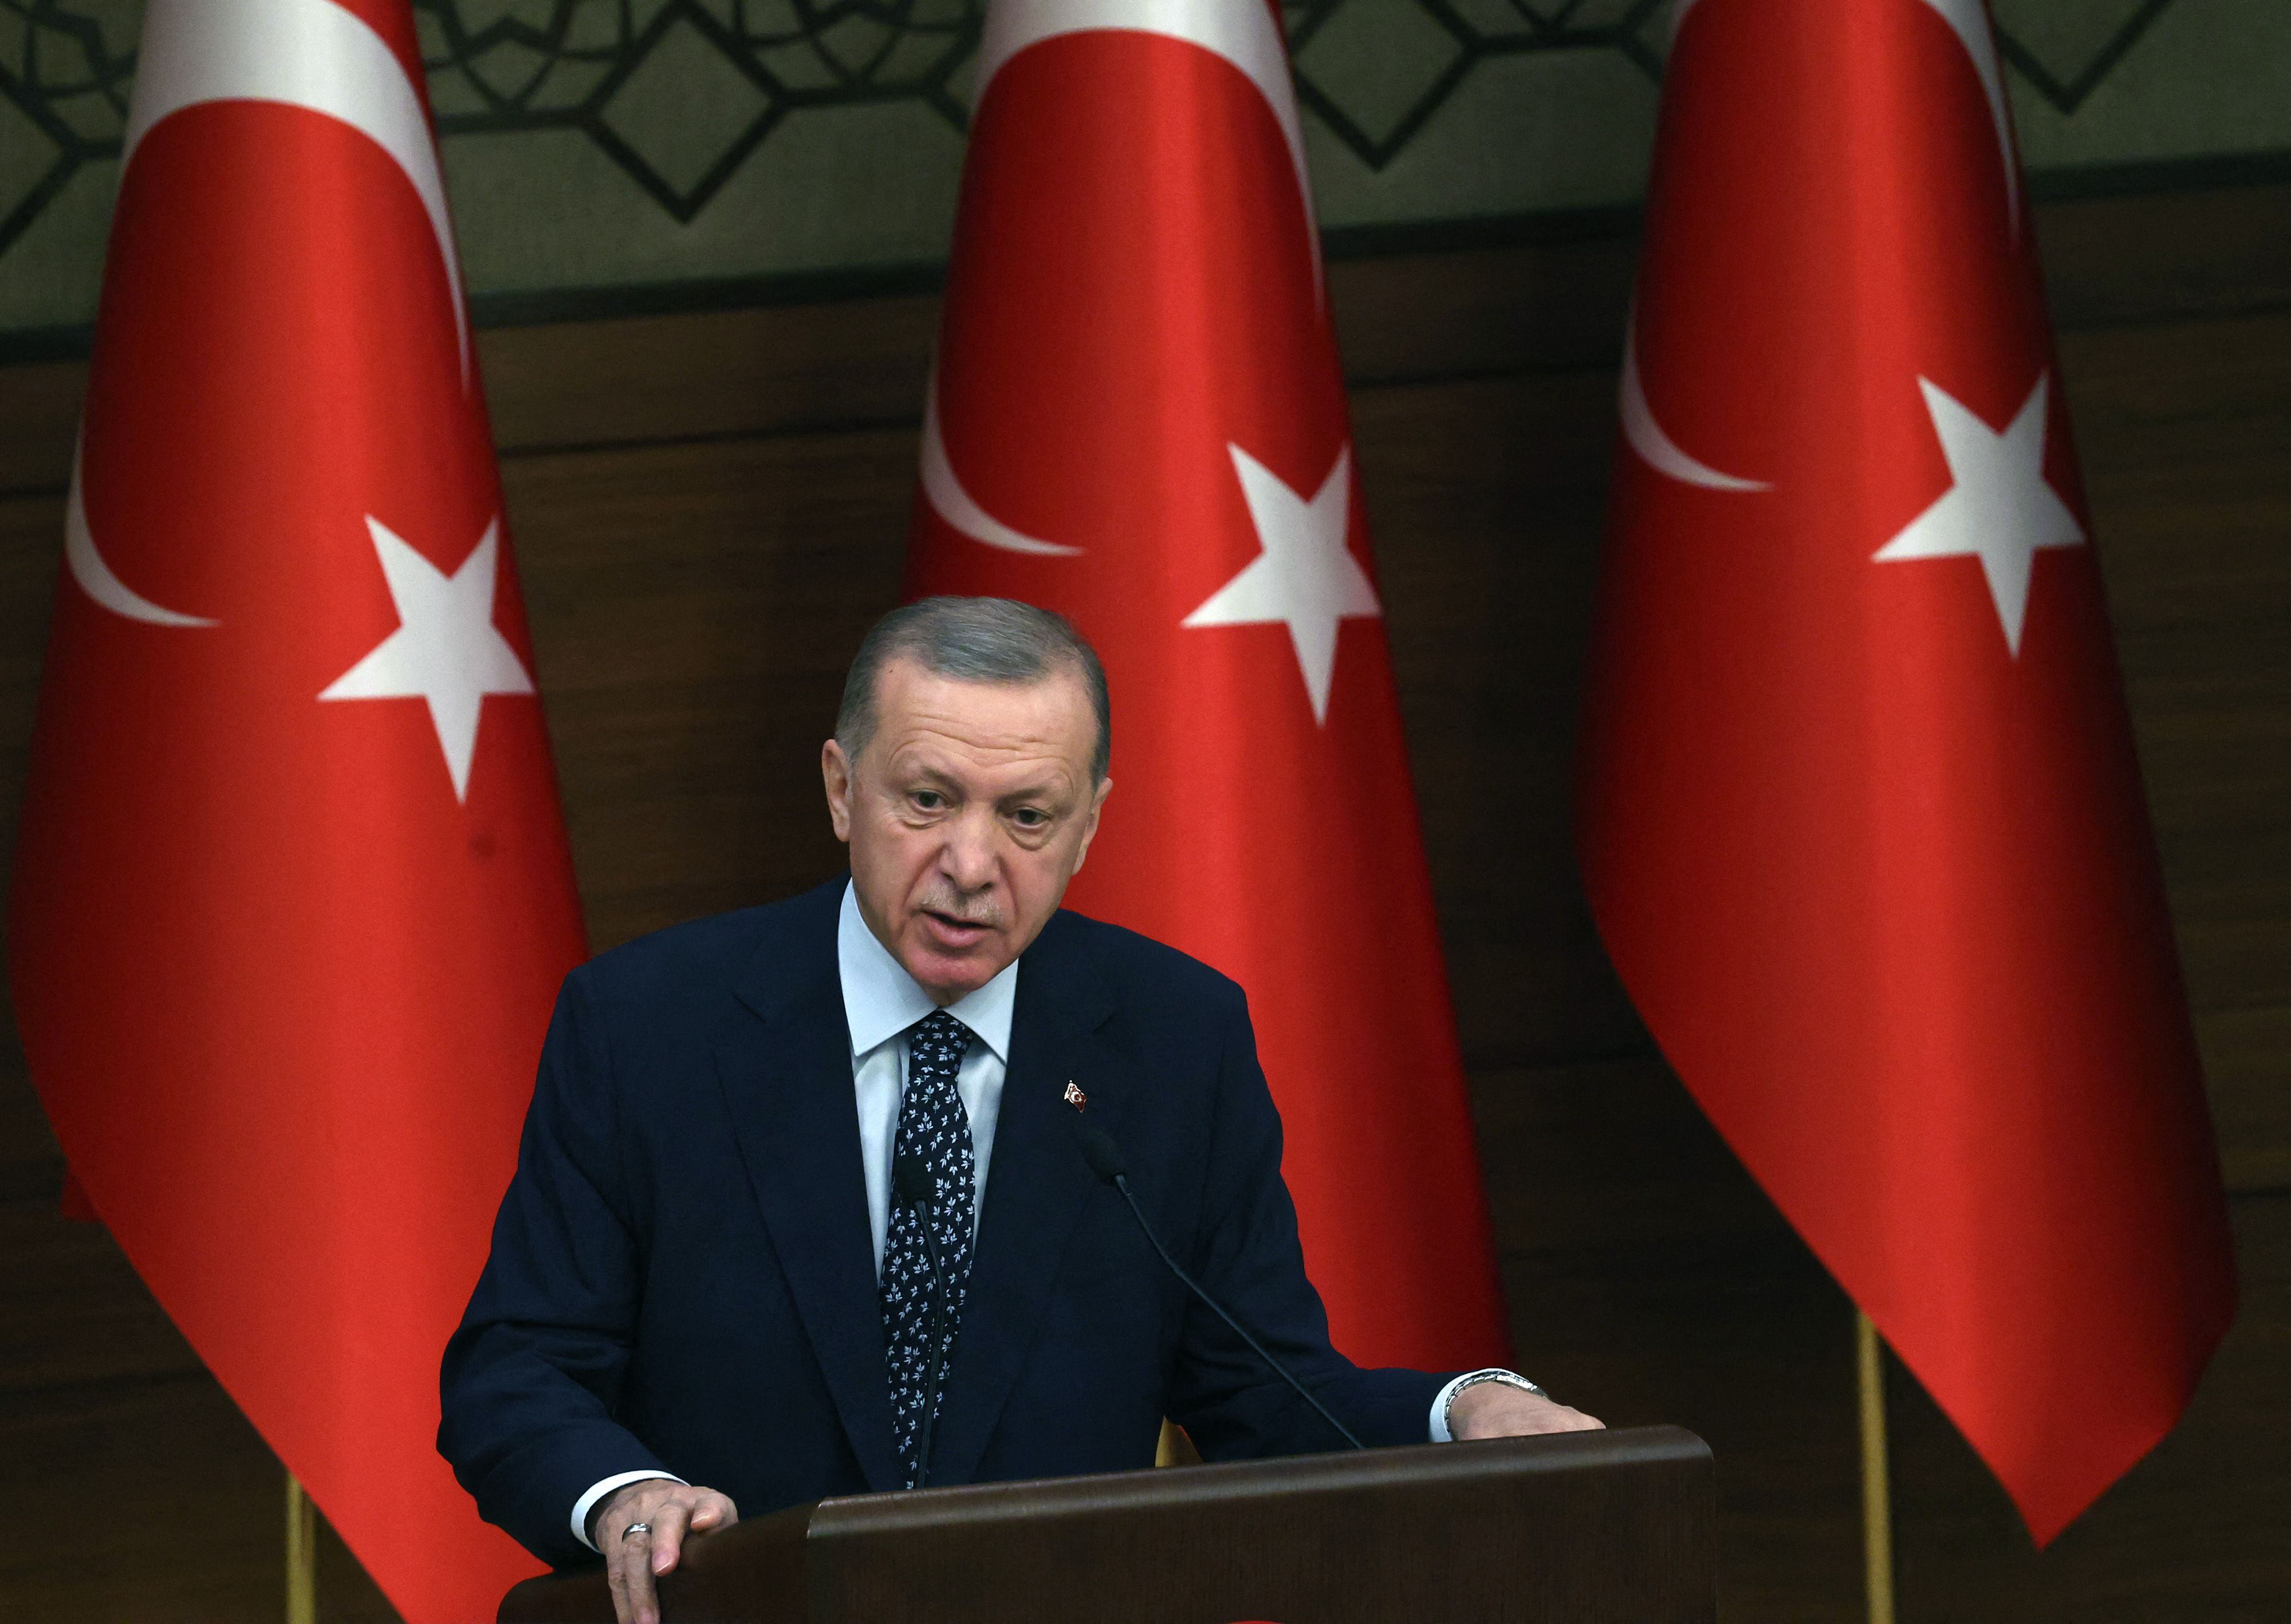 El presidente turco, Recep Tayyip Erdogan, pronuncia un discurso en la Conferencia Internacional del Defensor del Pueblo en el complejo presidencial de Ankara, Turquía, el 11 de enero de 2023.